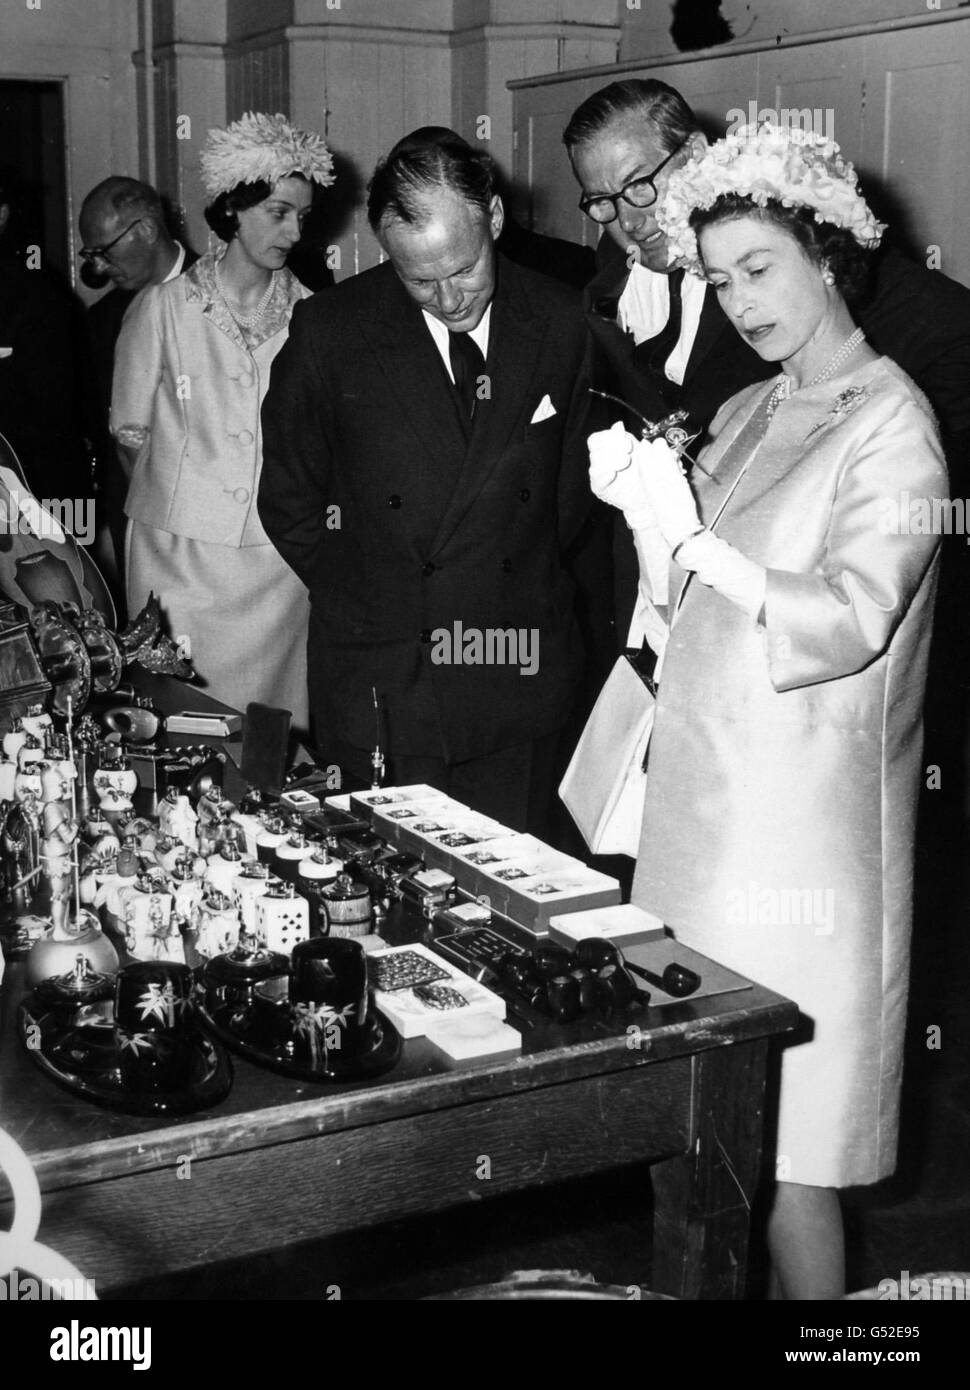 La reine Elizabeth II voit de près un briquet-appareil-photo lorsqu'on lui a montré des marchandises de contrebande, récemment saisies, après l'ouverture de l'aile est restaurée de la maison personnalisée dans la rue Lower Thames, ville de Londres. Banque D'Images